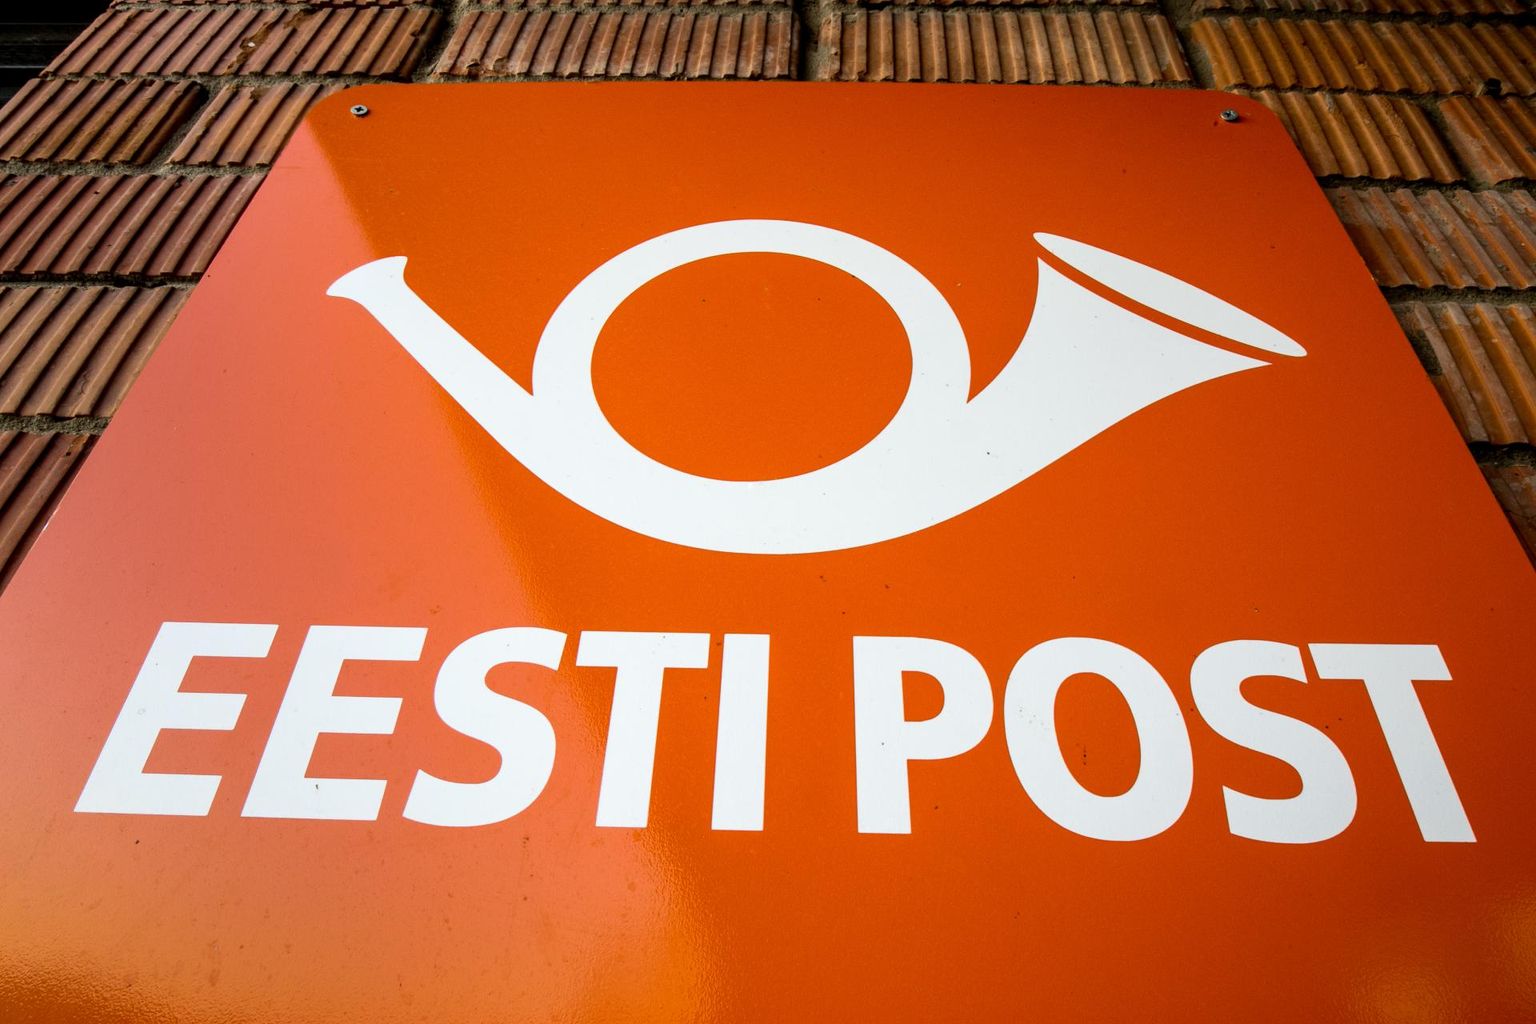 Mai algul suletakse ajutiselt Põhja-Pärnumaal kaks postkontorit.